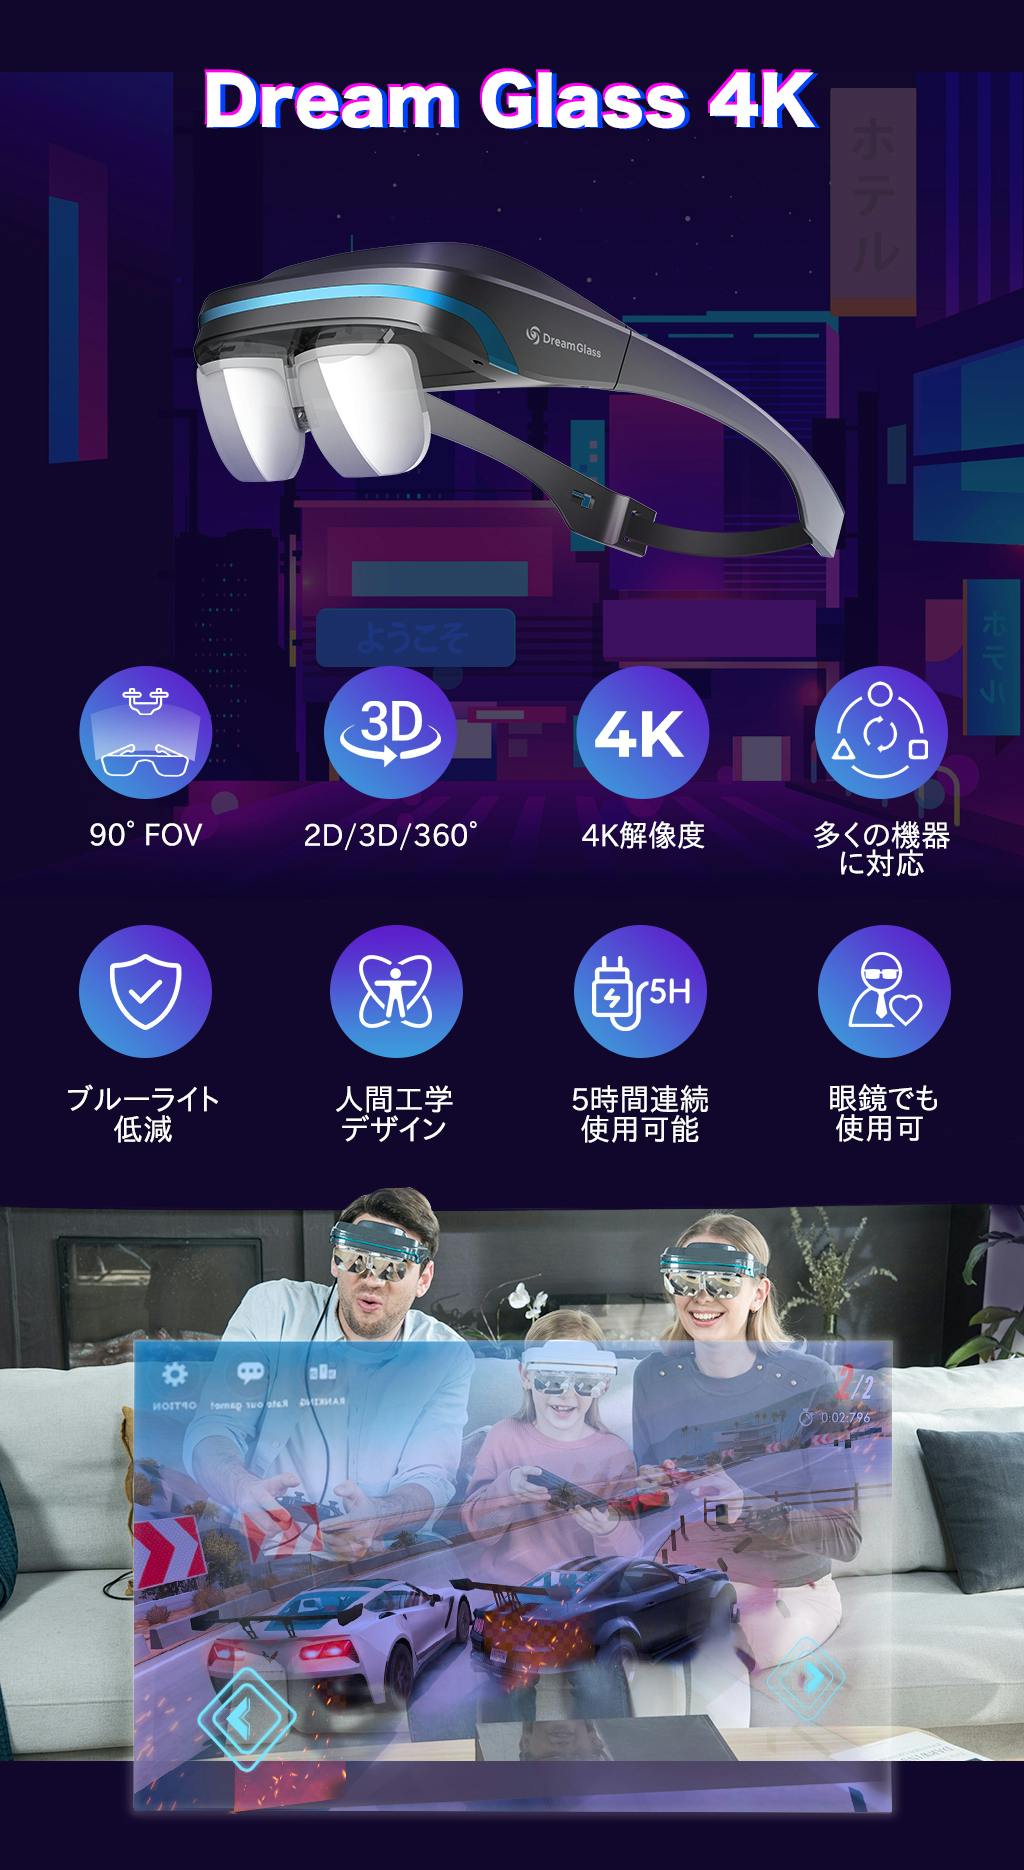 テレビ/映像機器 その他 Dream Glass 4K-世界初のポータブル & プライベート AR グラス 